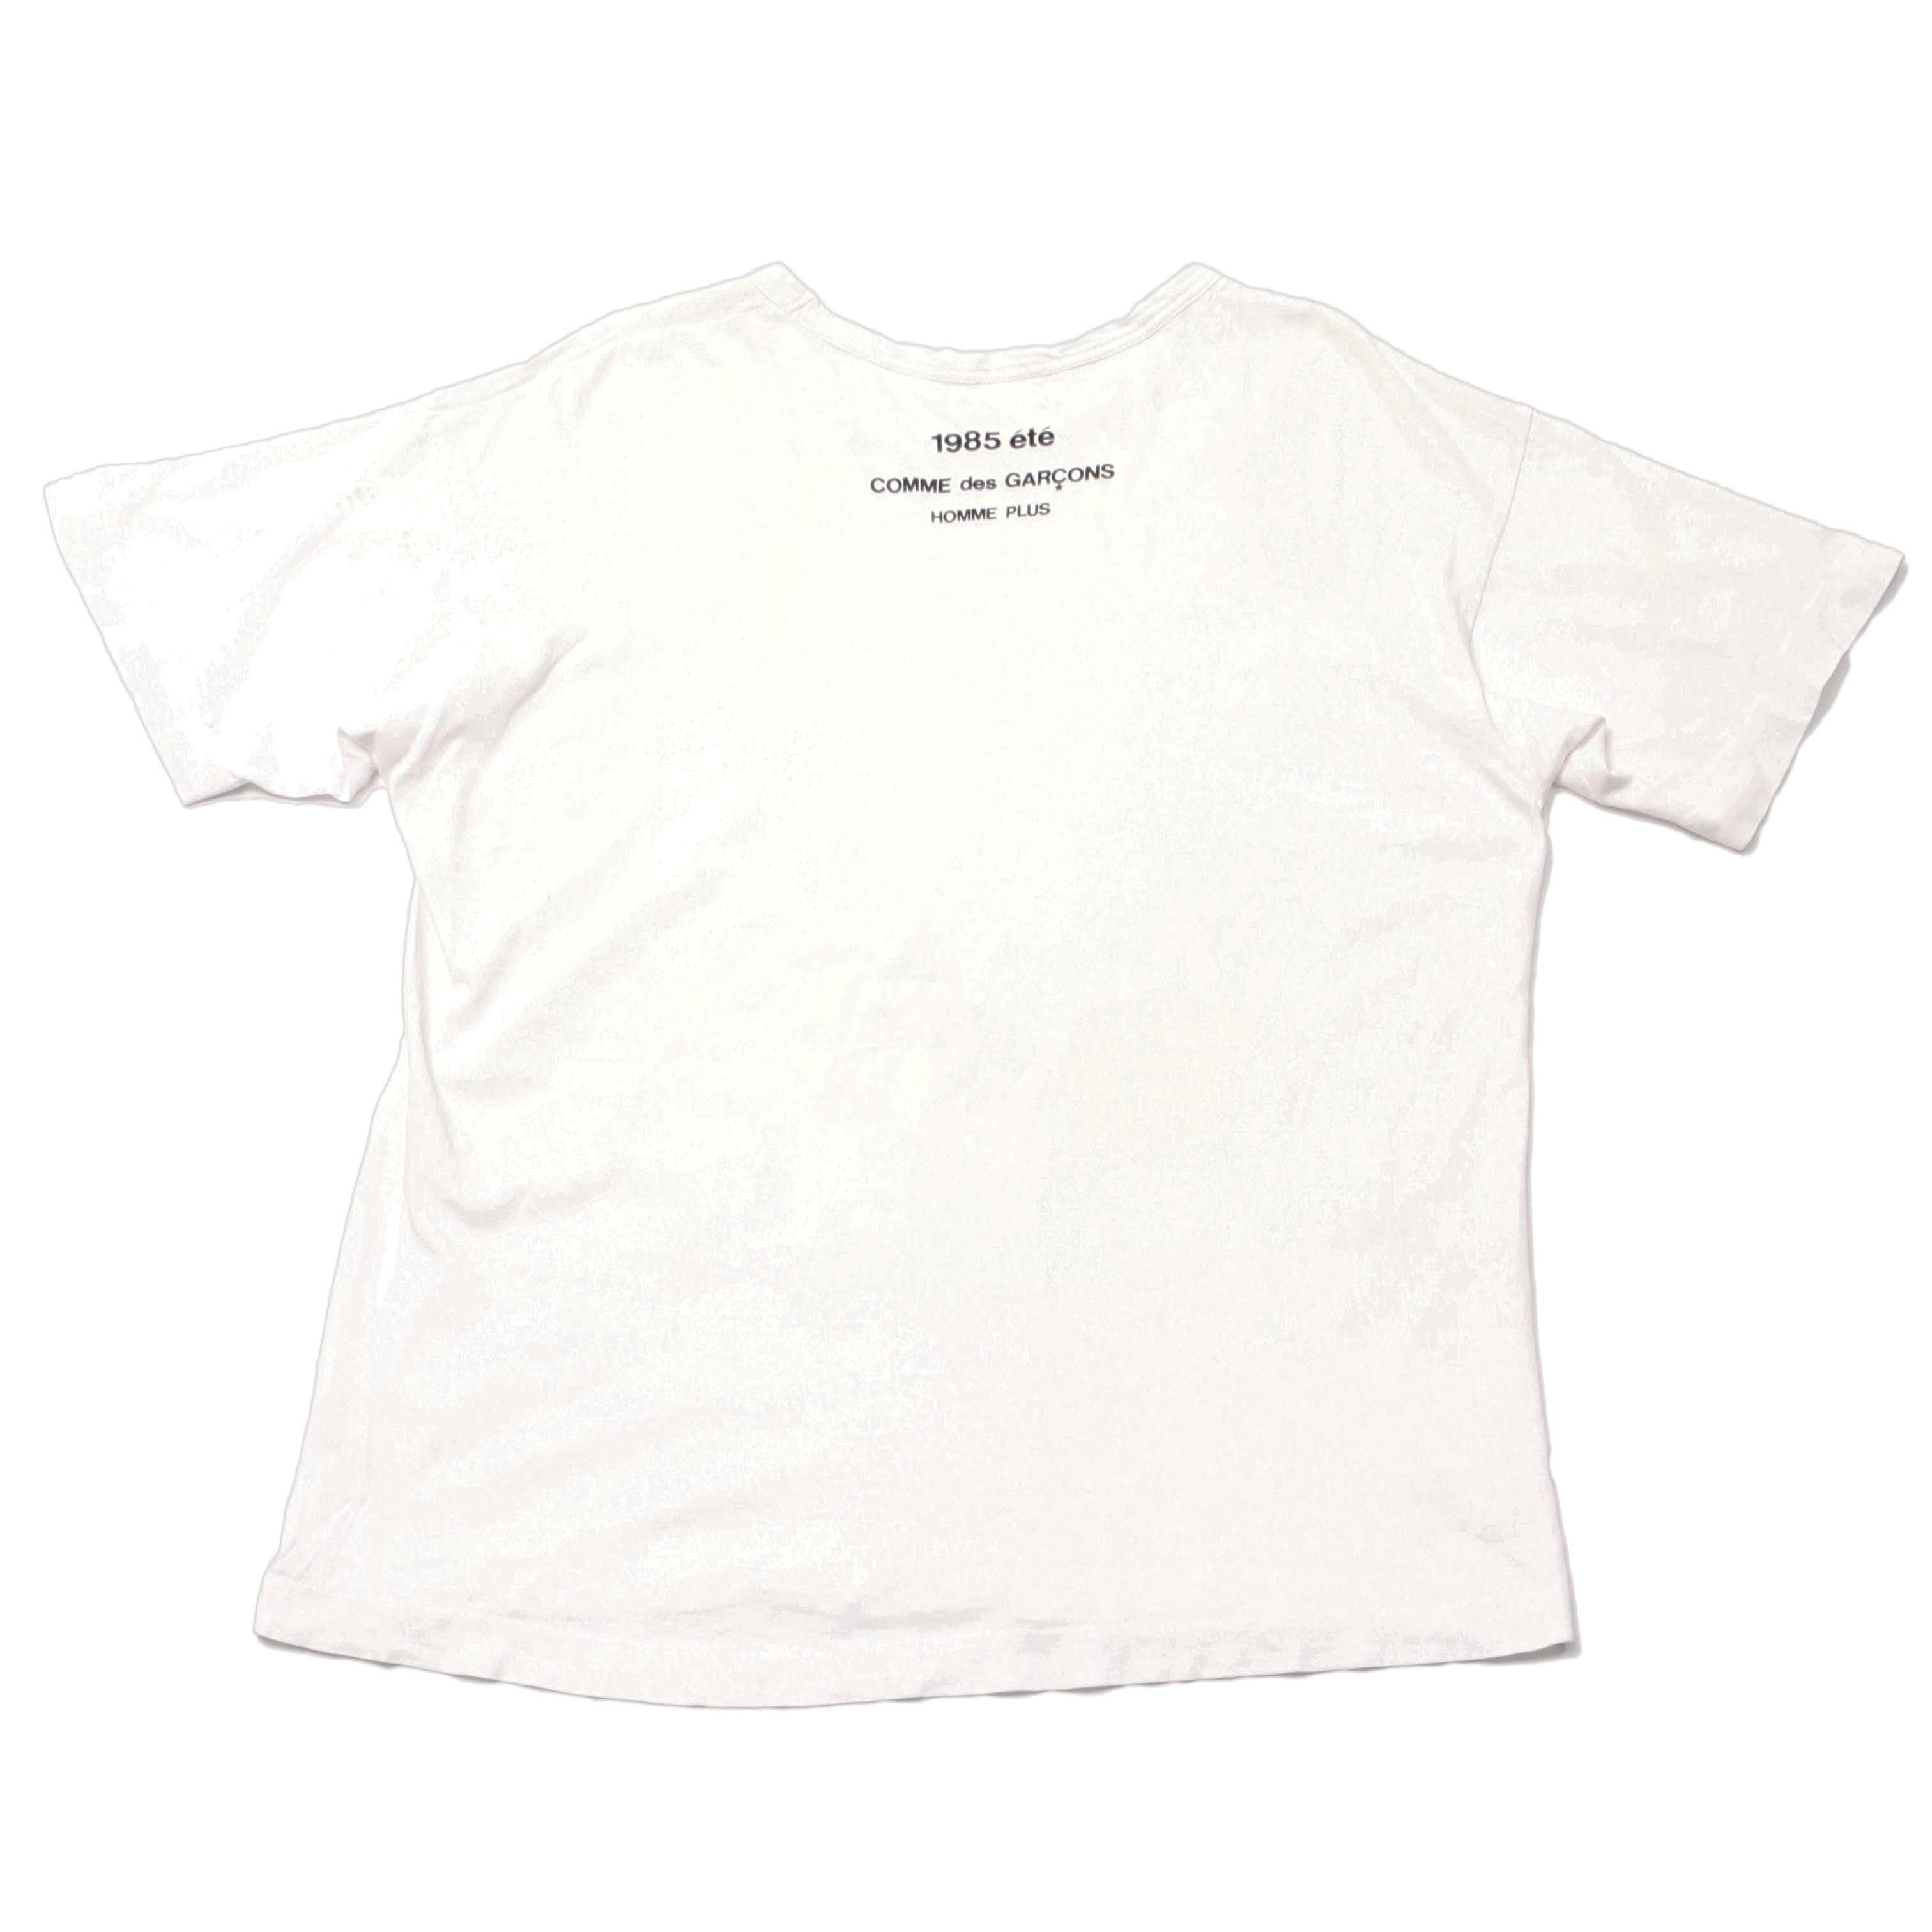 SS85 '1985 été Homme Plus' Cotton T-shirt - 1